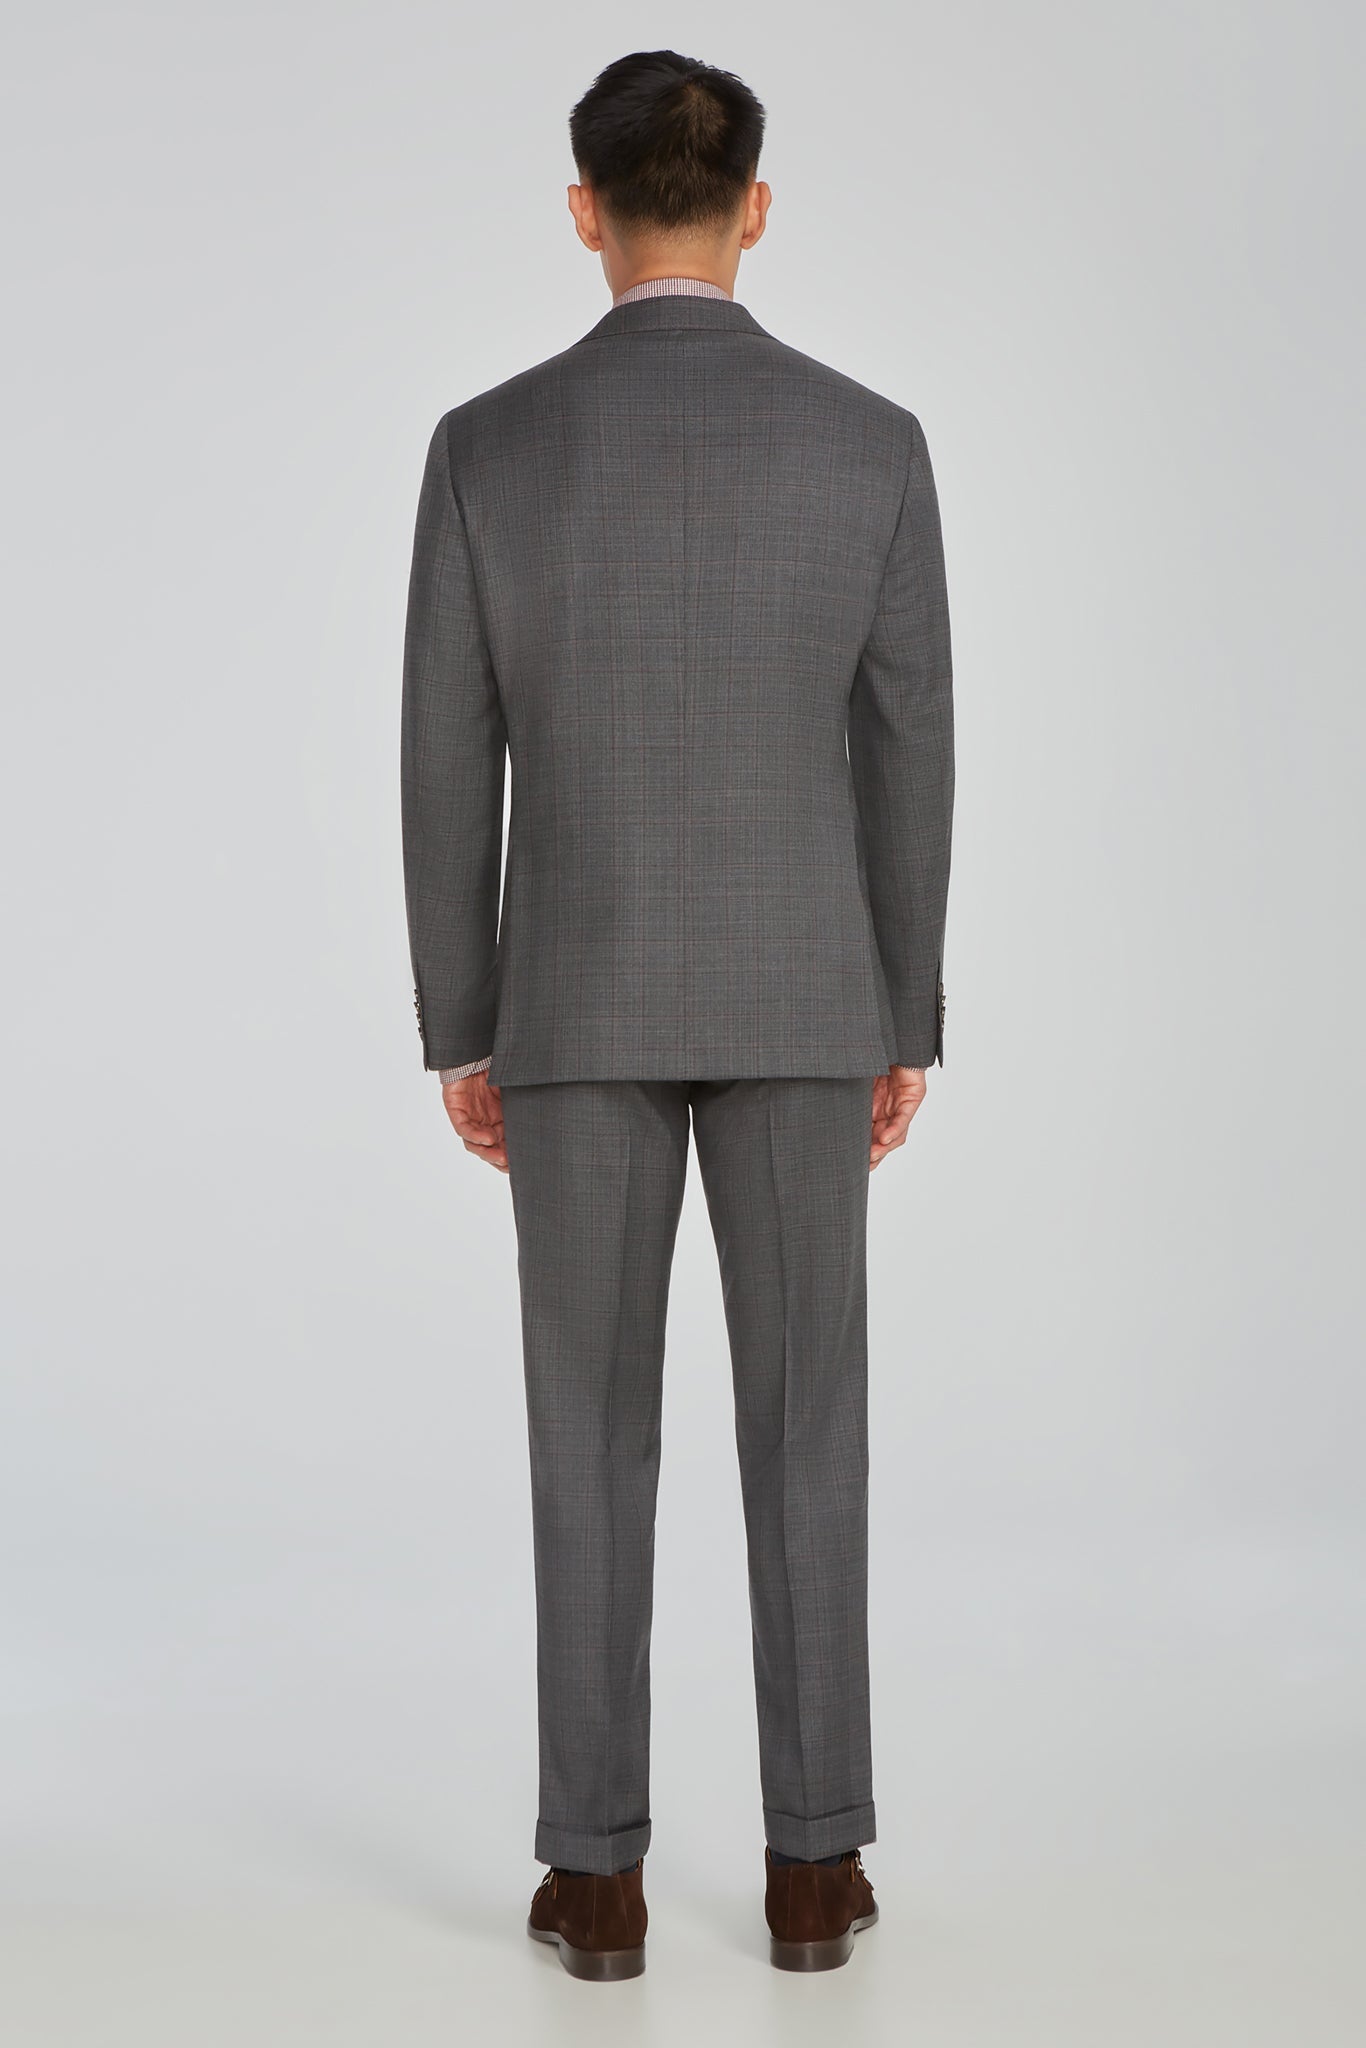 Alt view 2 Esprit Plaid Wool Suit in Grey